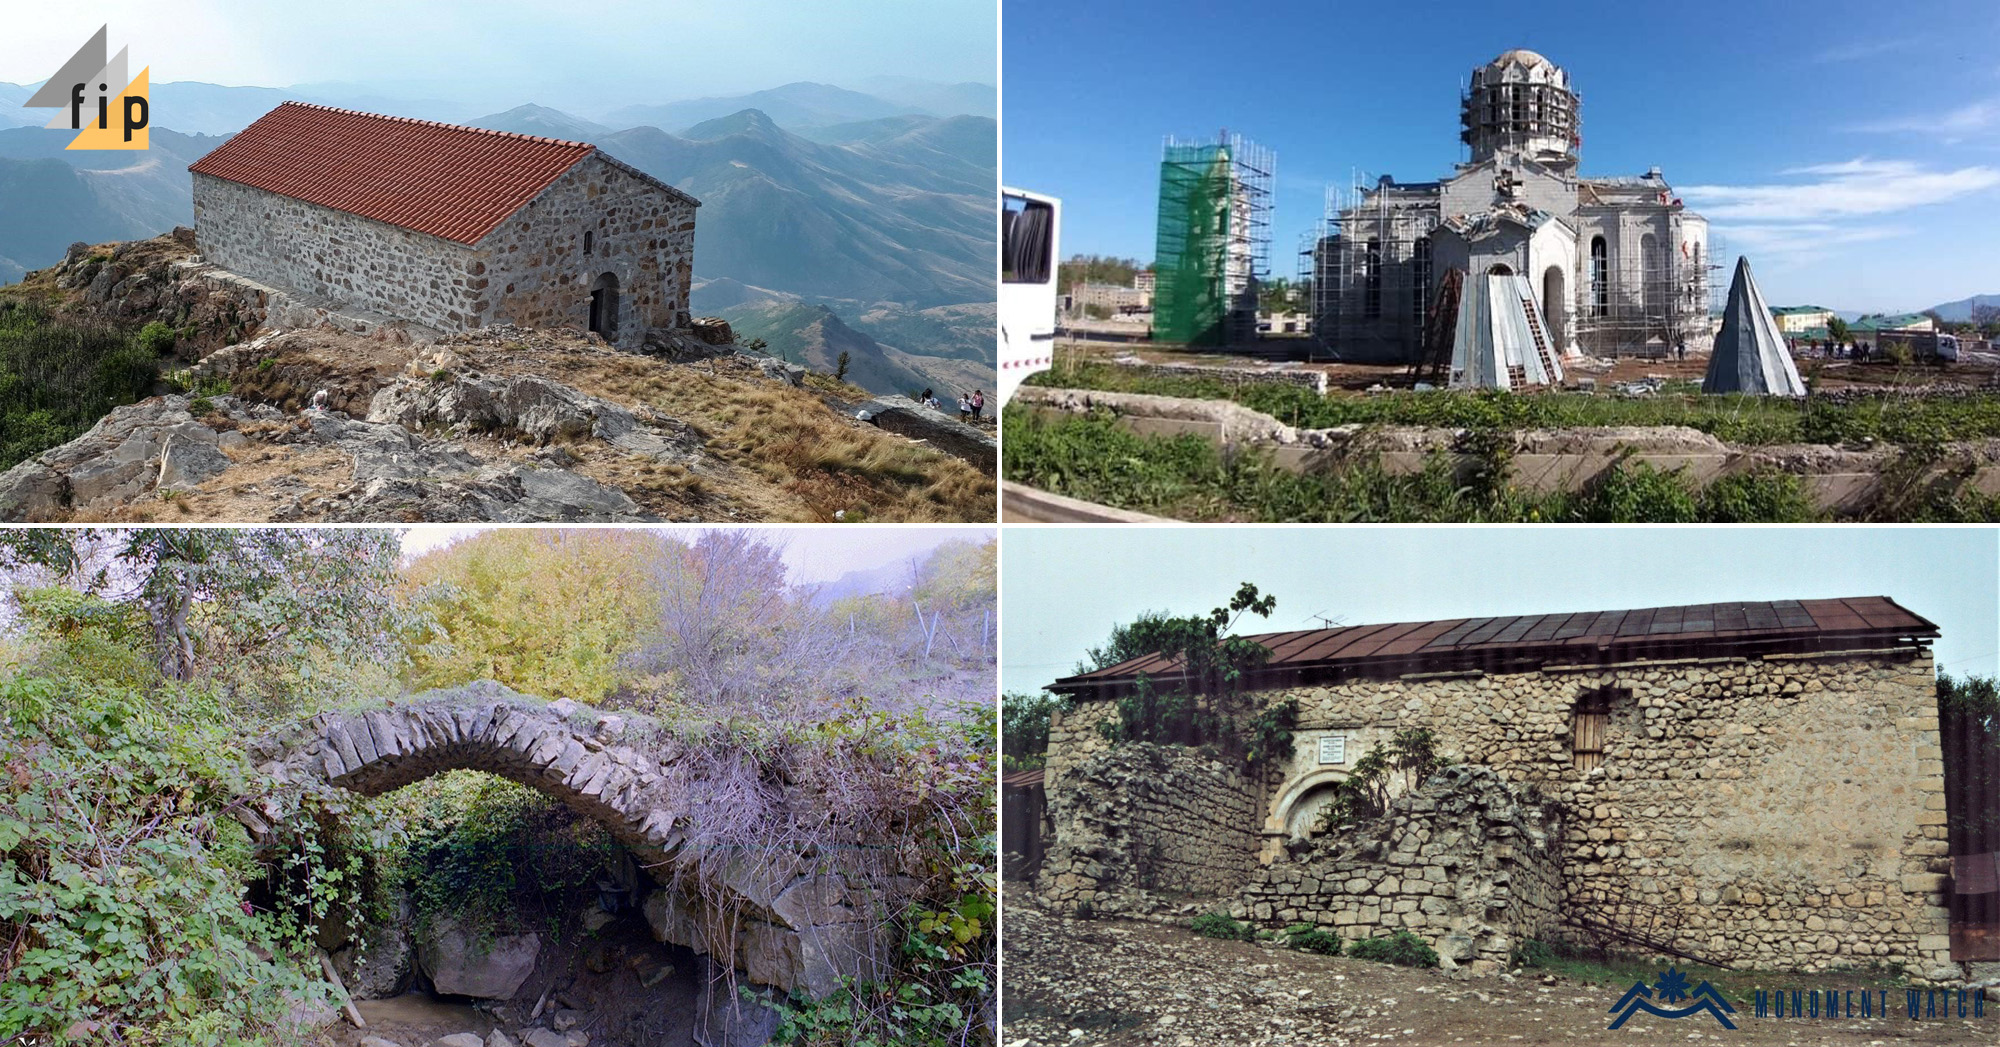 Հայկական մշակութային ժառանգությունը Լեռնային Ղարաբաղում վտանգի տակ է. Կոստաս Ռապտիս